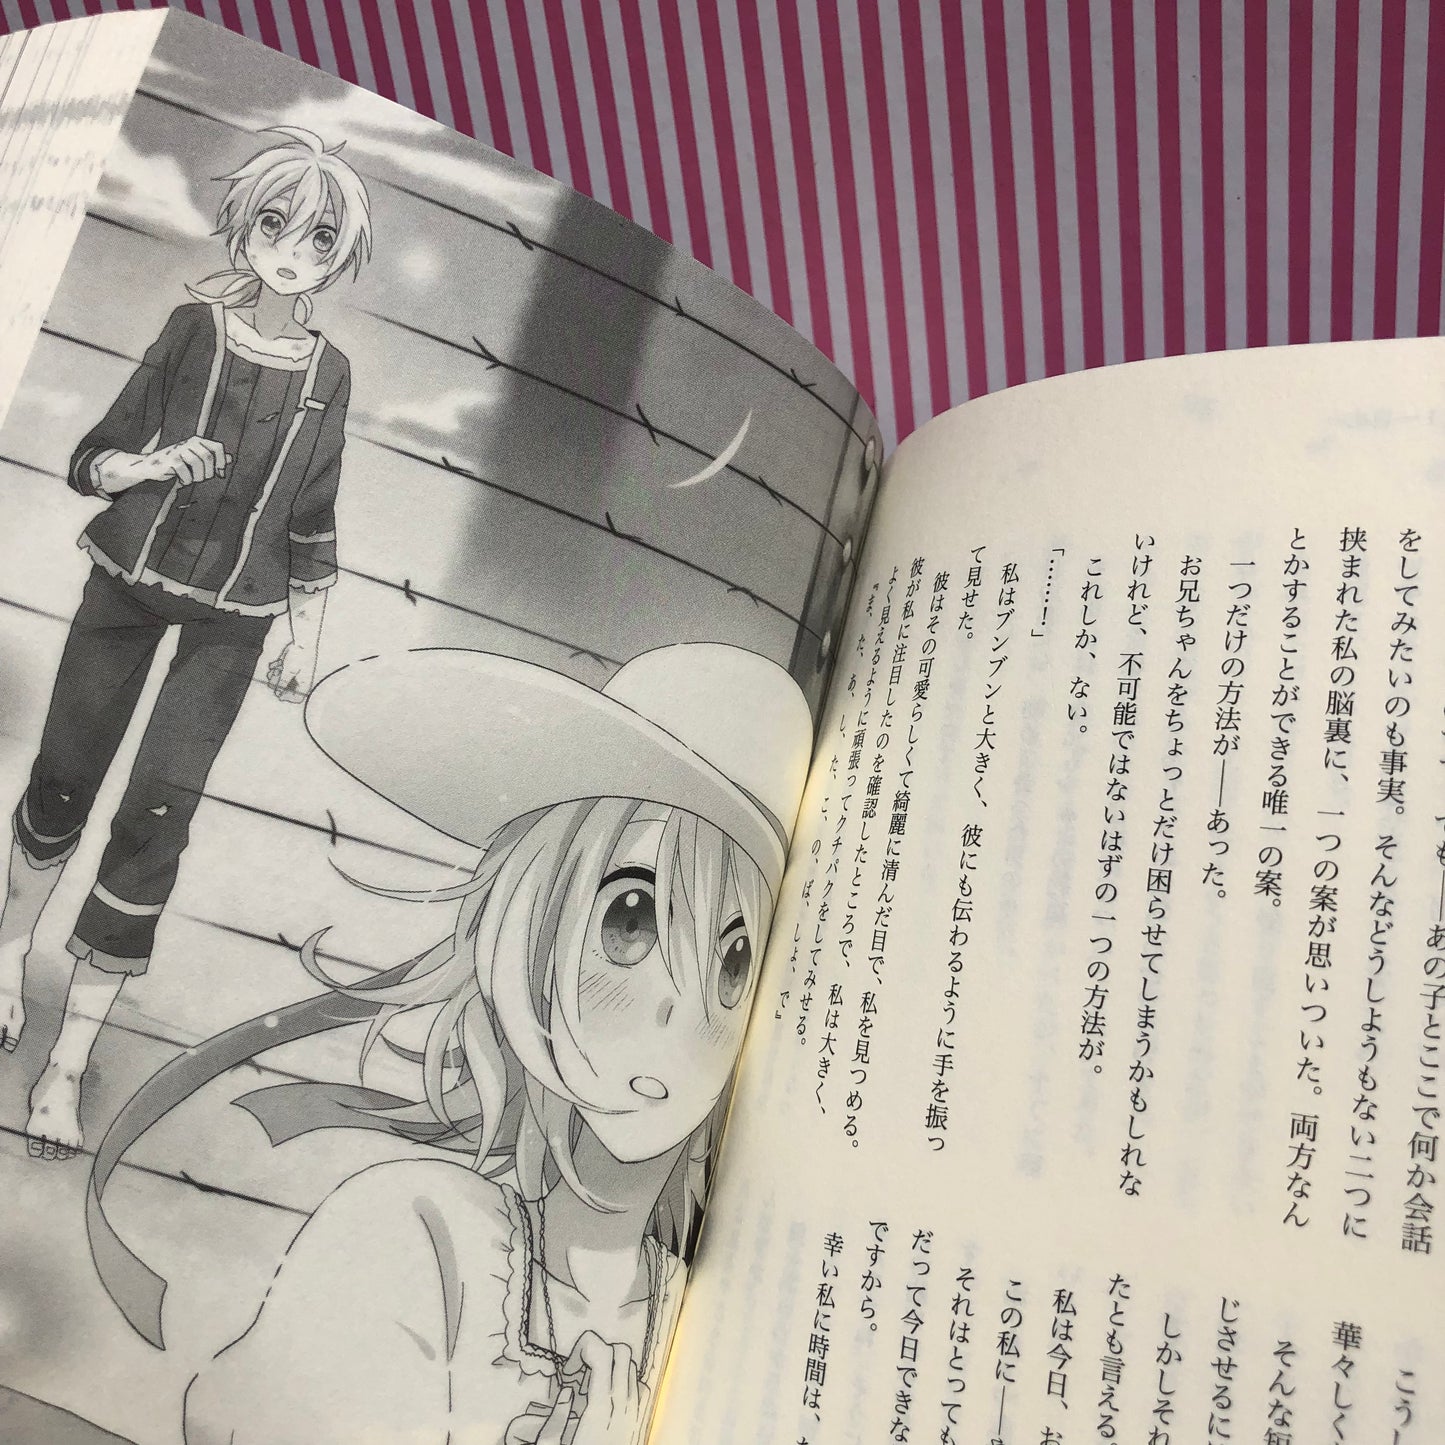 Novela Ligera Vocaloid Nico Nico Douga Prisoners, paper planes, girls, aporia Syujin to Kamihikouki "Shoujo Aporia" - Miku Hatsune, Syujin P